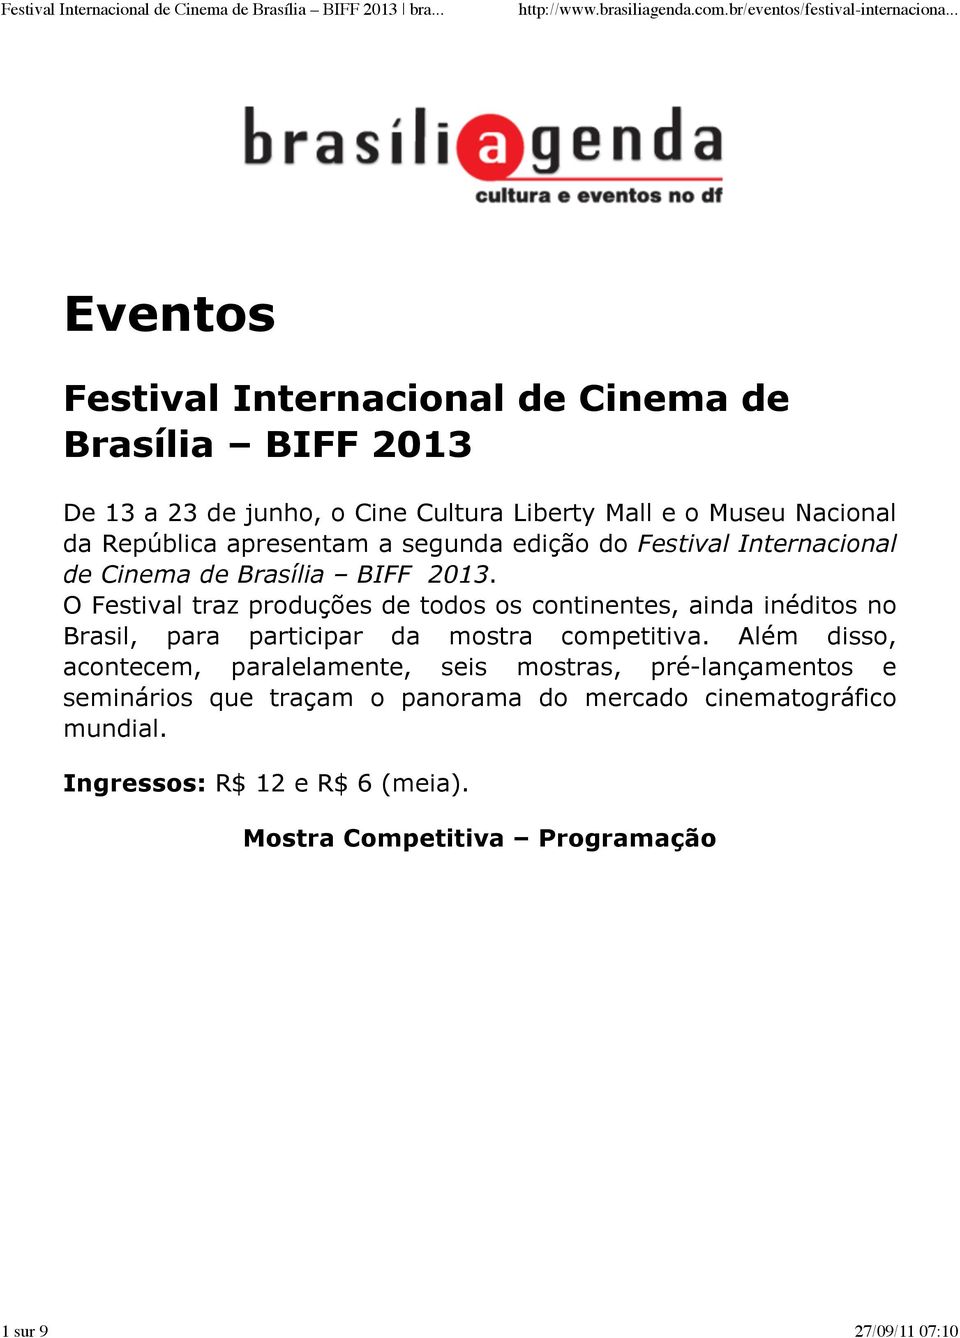 O Festival traz produções de todos os continentes, ainda inéditos no Brasil, para participar da mostra competitiva.